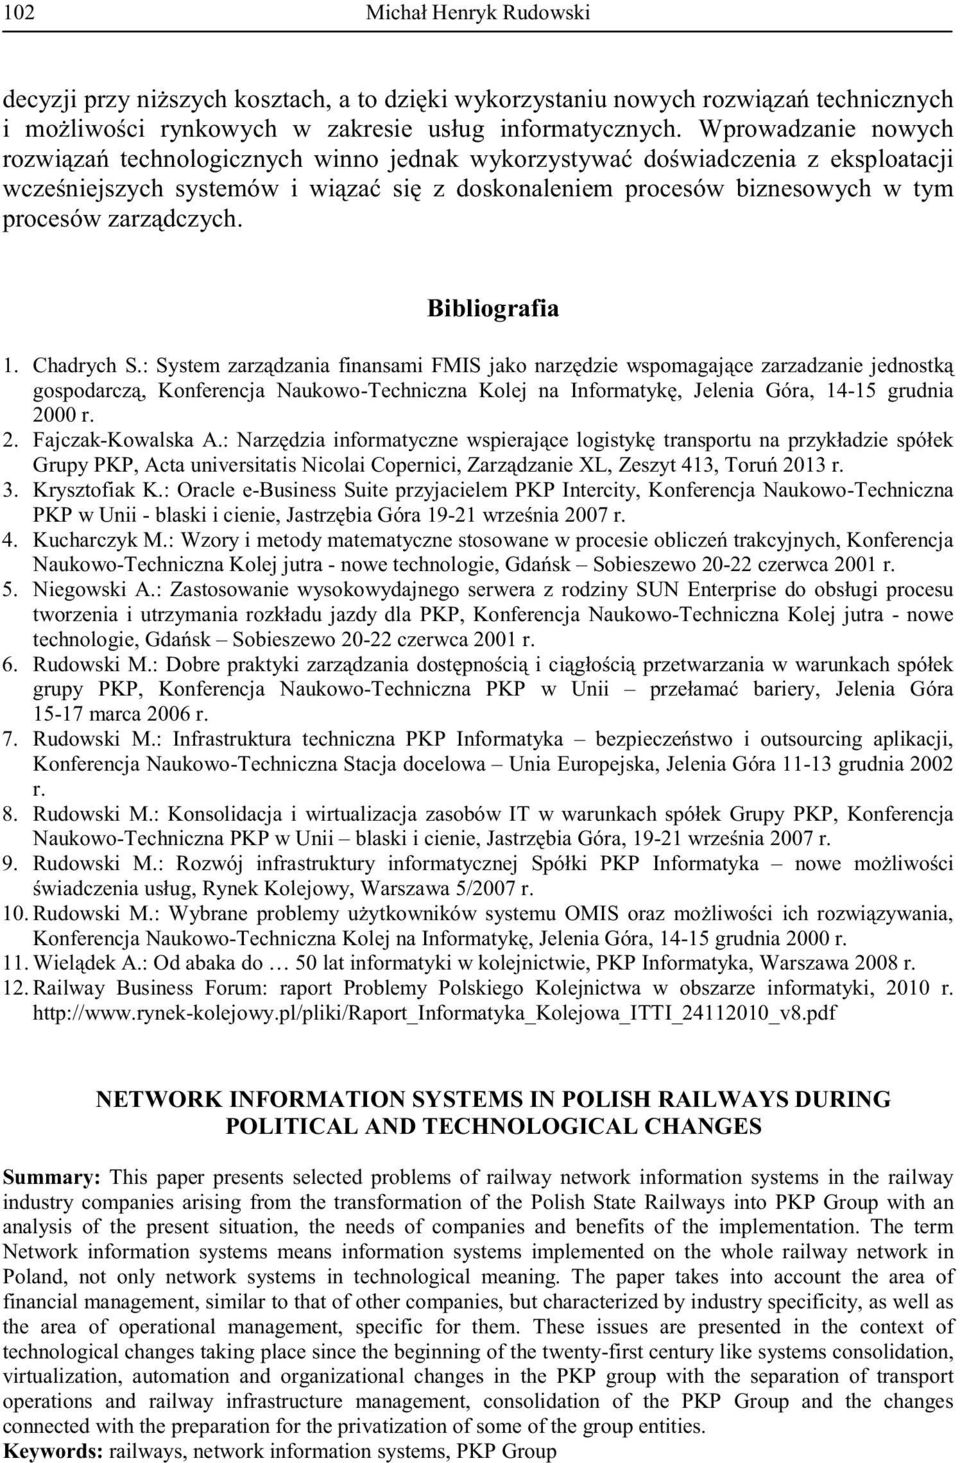 : Infrastruktura techniczna PKP Informatyka, - - r. 8. Rudowski M.: Naukowo-Techniczna PKP w Unii blask - r. 9. Rudowski M.:, r. 10. Rudowski M.:, - -15 grudnia 2000 r. 11. A.